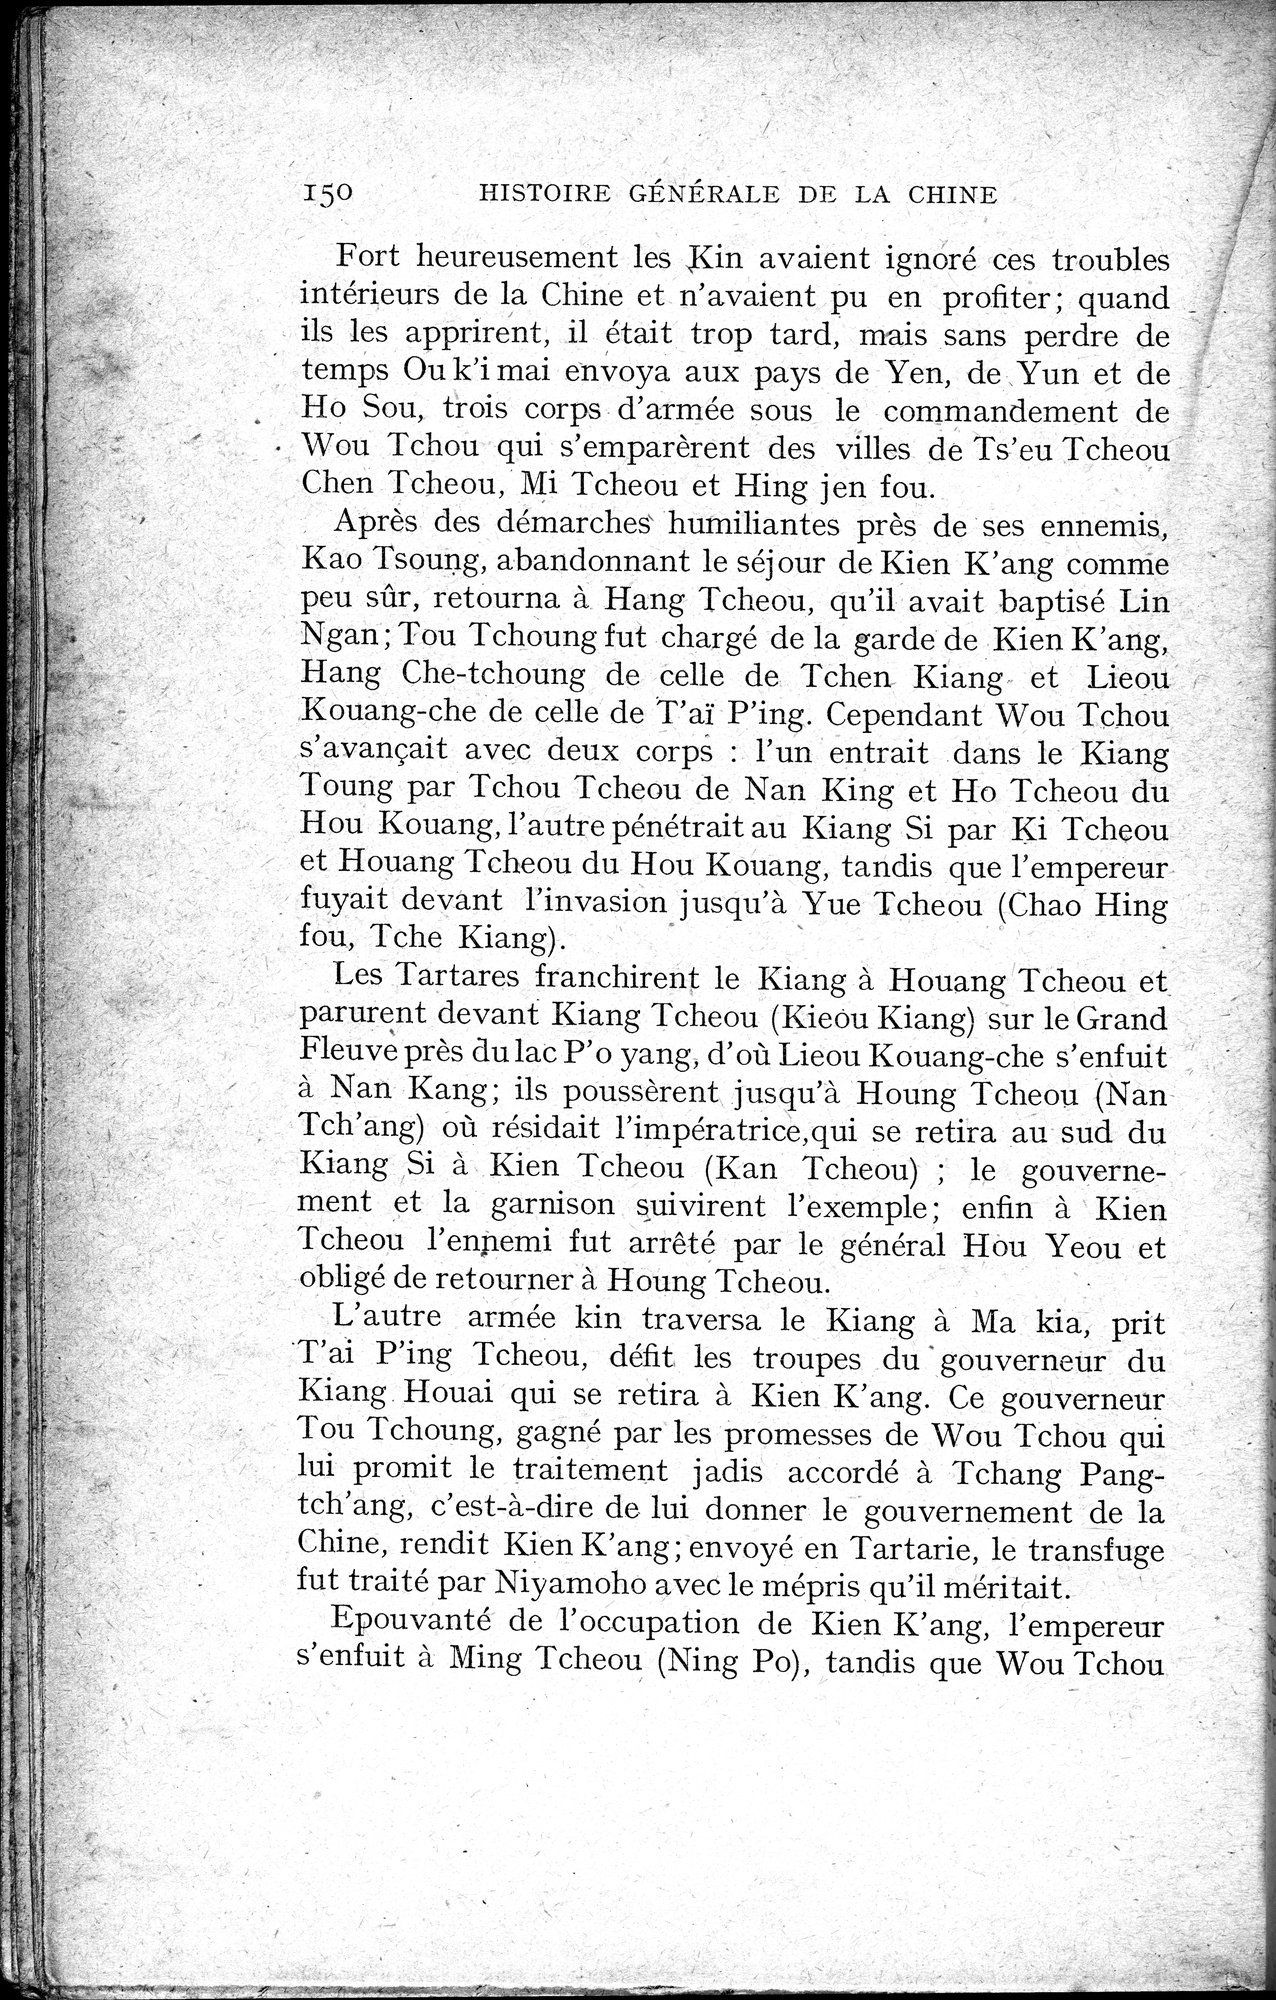 Histoire Générale de la Chine : vol.2 / Page 152 (Grayscale High Resolution Image)